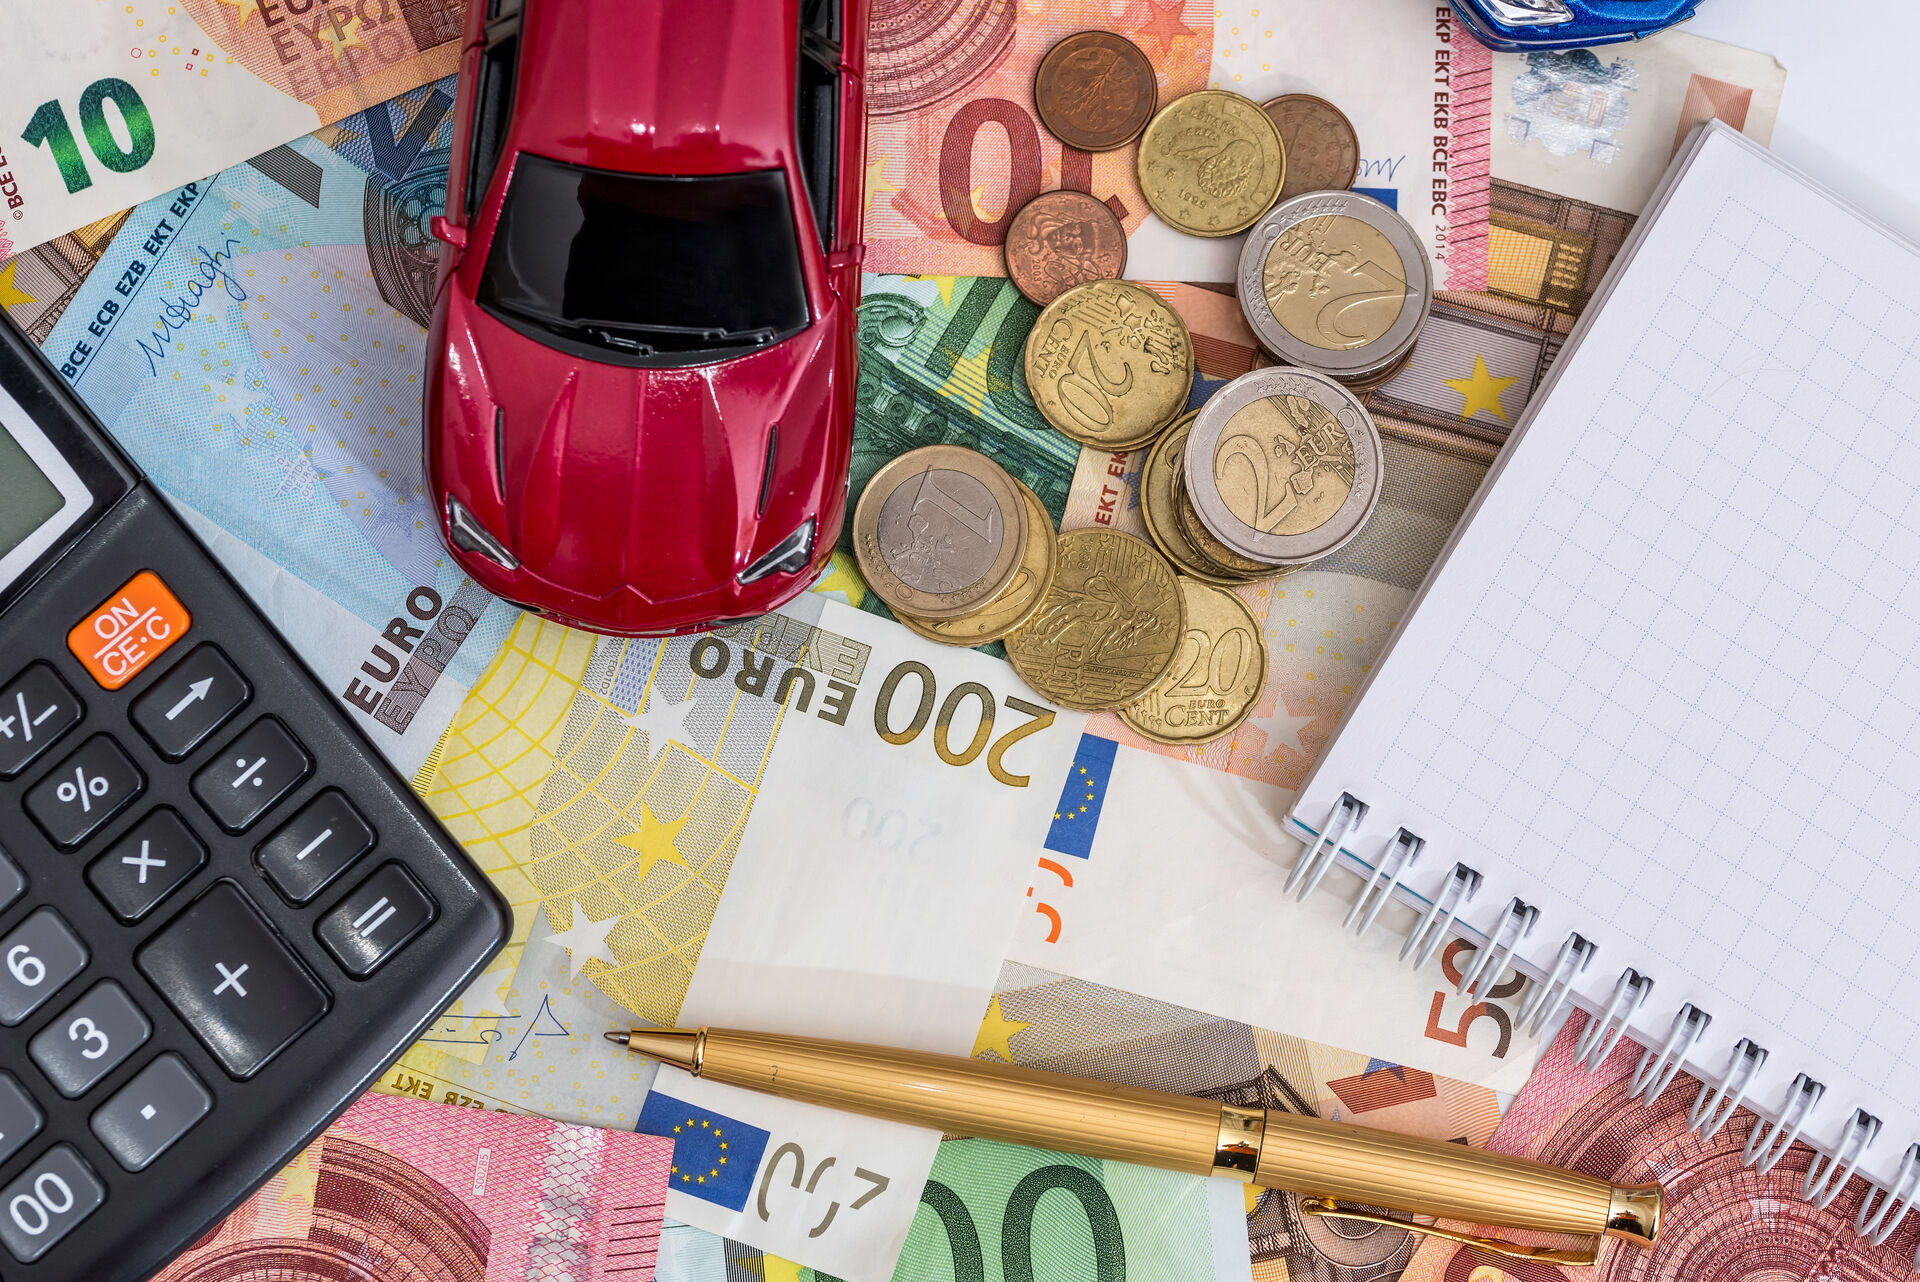 Auf einem Tisch liegen Euroscheine und Eurogeldstücke verstreut. Darauf ein Block und ein Stift, ein Taschenrechner und ein Spielzeugauto.